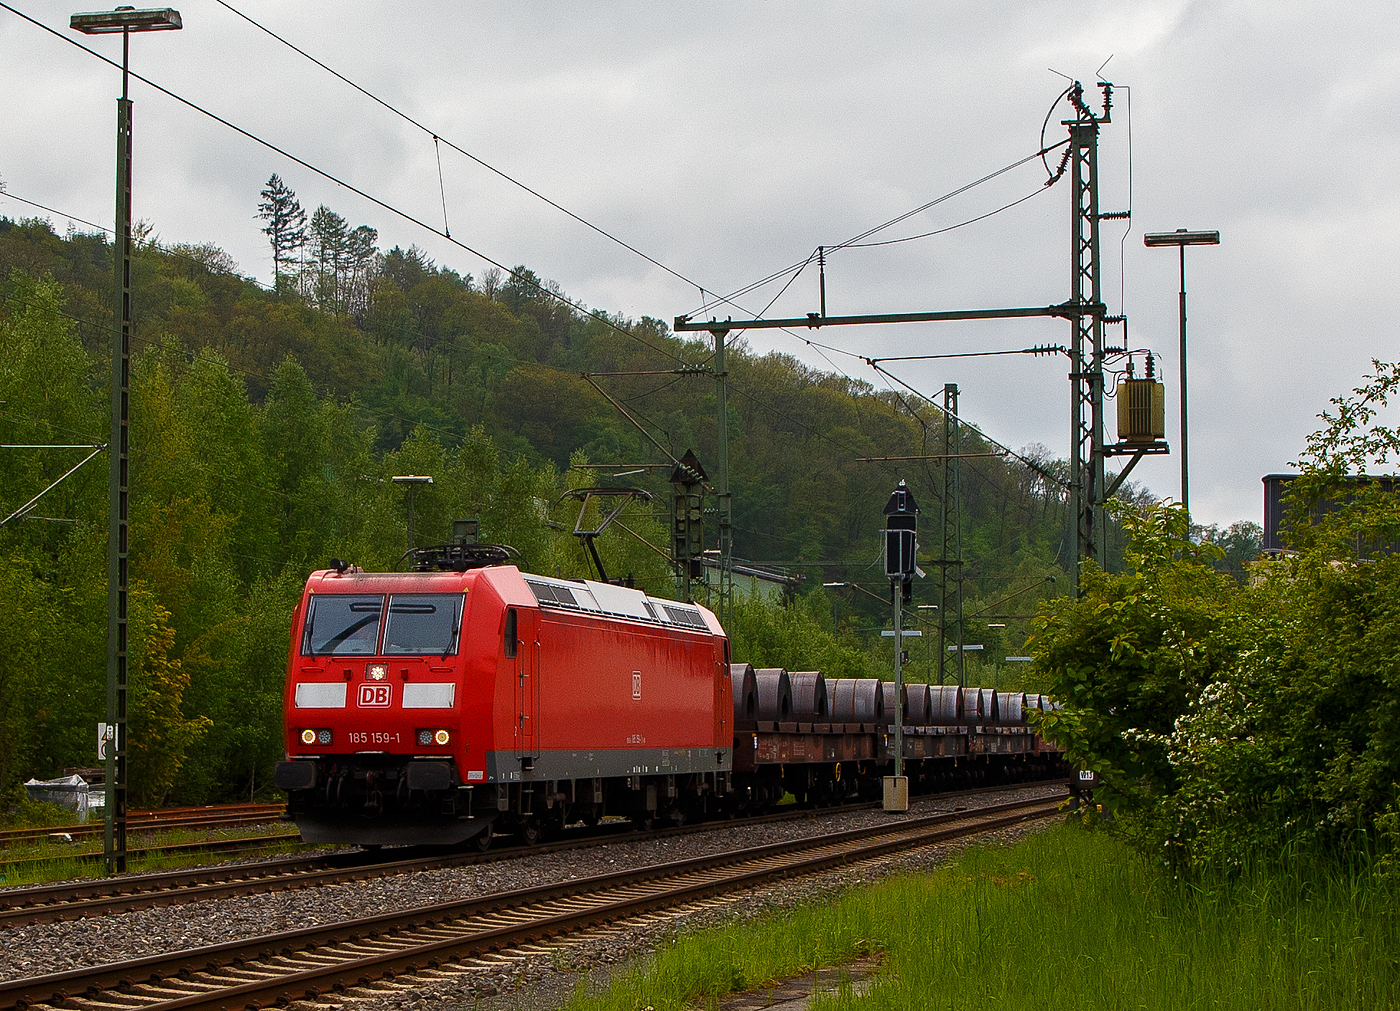 Die 185 159-1 (91 80 6185 159-1 D-DB) der DB Cargo AG fährt am 11.05.2023, mit einem Warmband-Coilzug (offene sechsachsige Wagen der Gattung Sahmms etc.), durch Niederschelden in Richtung Siegen bzw. Kreuztal.

Die TRAXX F 140 AC1 wurde 2003 von der Bombardier Transportation GmbH in Kassel unter der Fabriknummer 33632 gebaut.